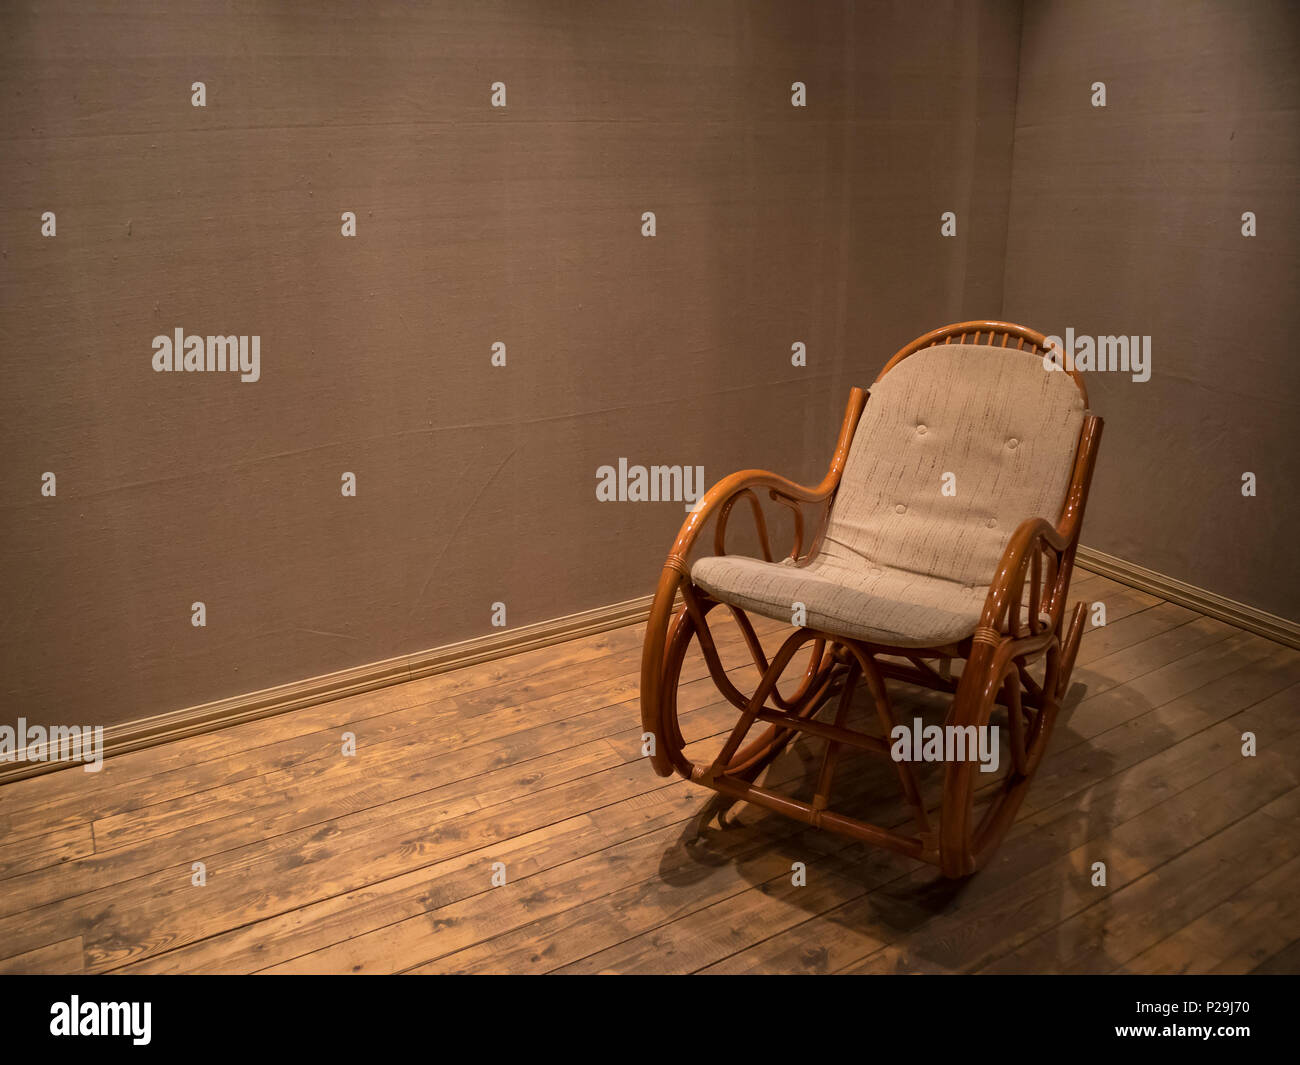 Fauteuil à bascule en osier dans la salle vide avec plancher en bois, concept piscine composition Banque D'Images